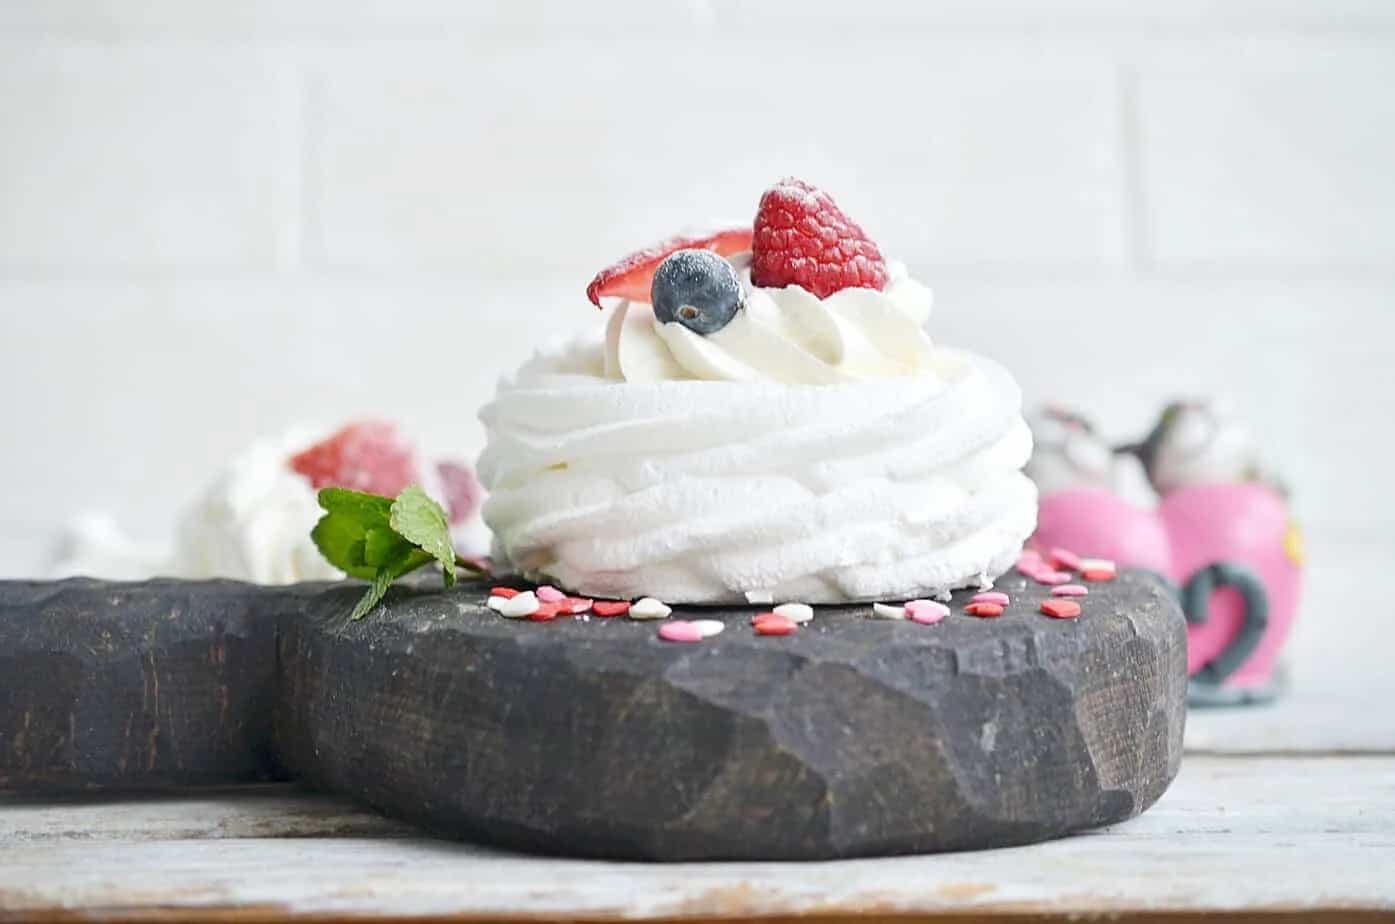 Side view of meringue cookie with berries.